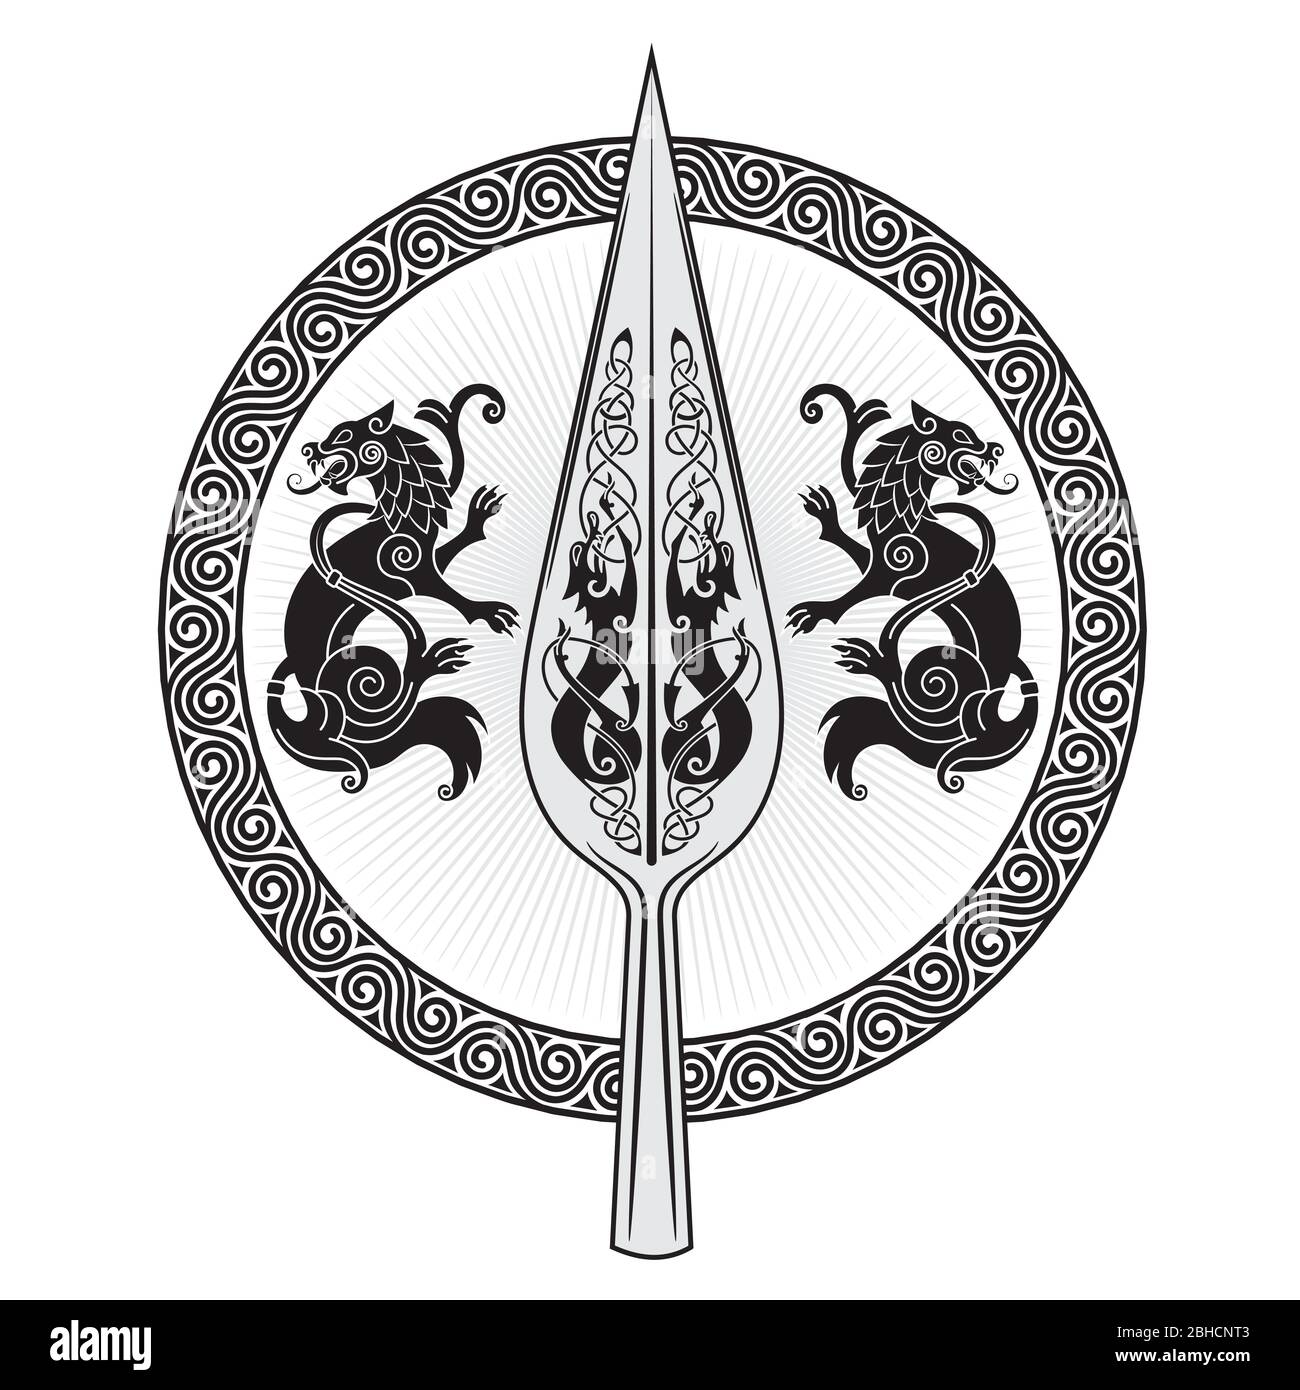 Der Speer Des Gottes Odin - Gungnir. Zwei Wölfe und skandinavisches Muster Stock Vektor